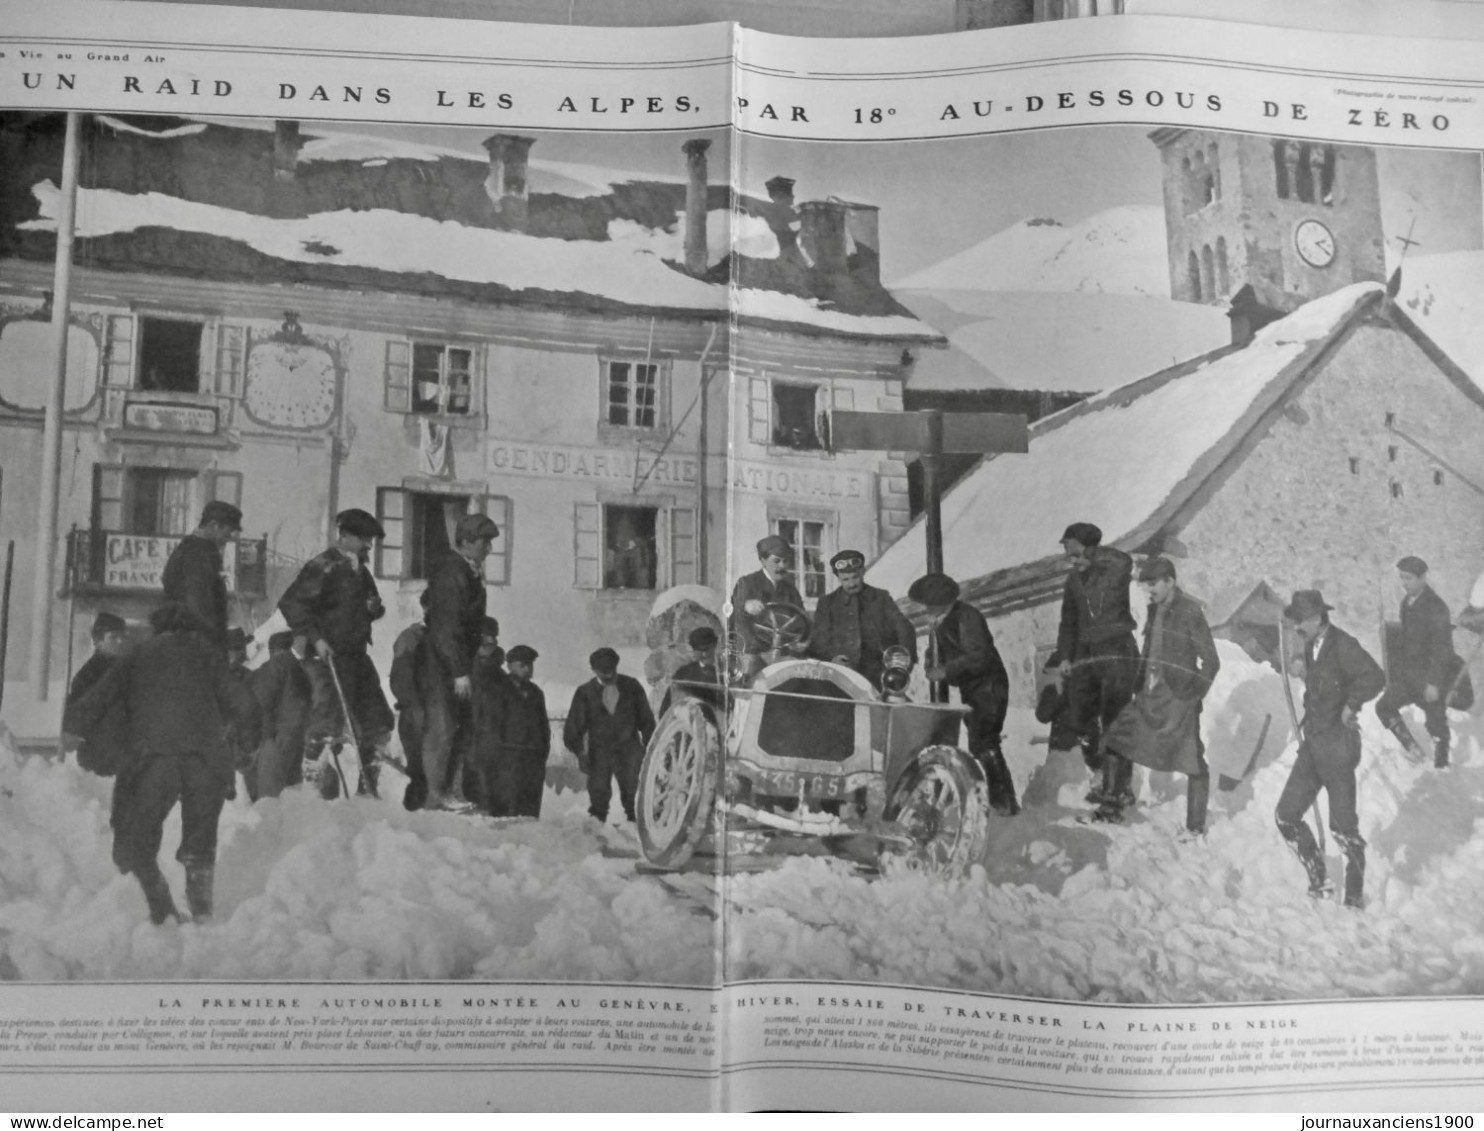 1907 COURSE VOITURE ALPES PYRENEES NEIGE ALTITUDE ENLISEMENT AUTOMOBILE 1 JOURNAL ANCIEN - Documenti Storici